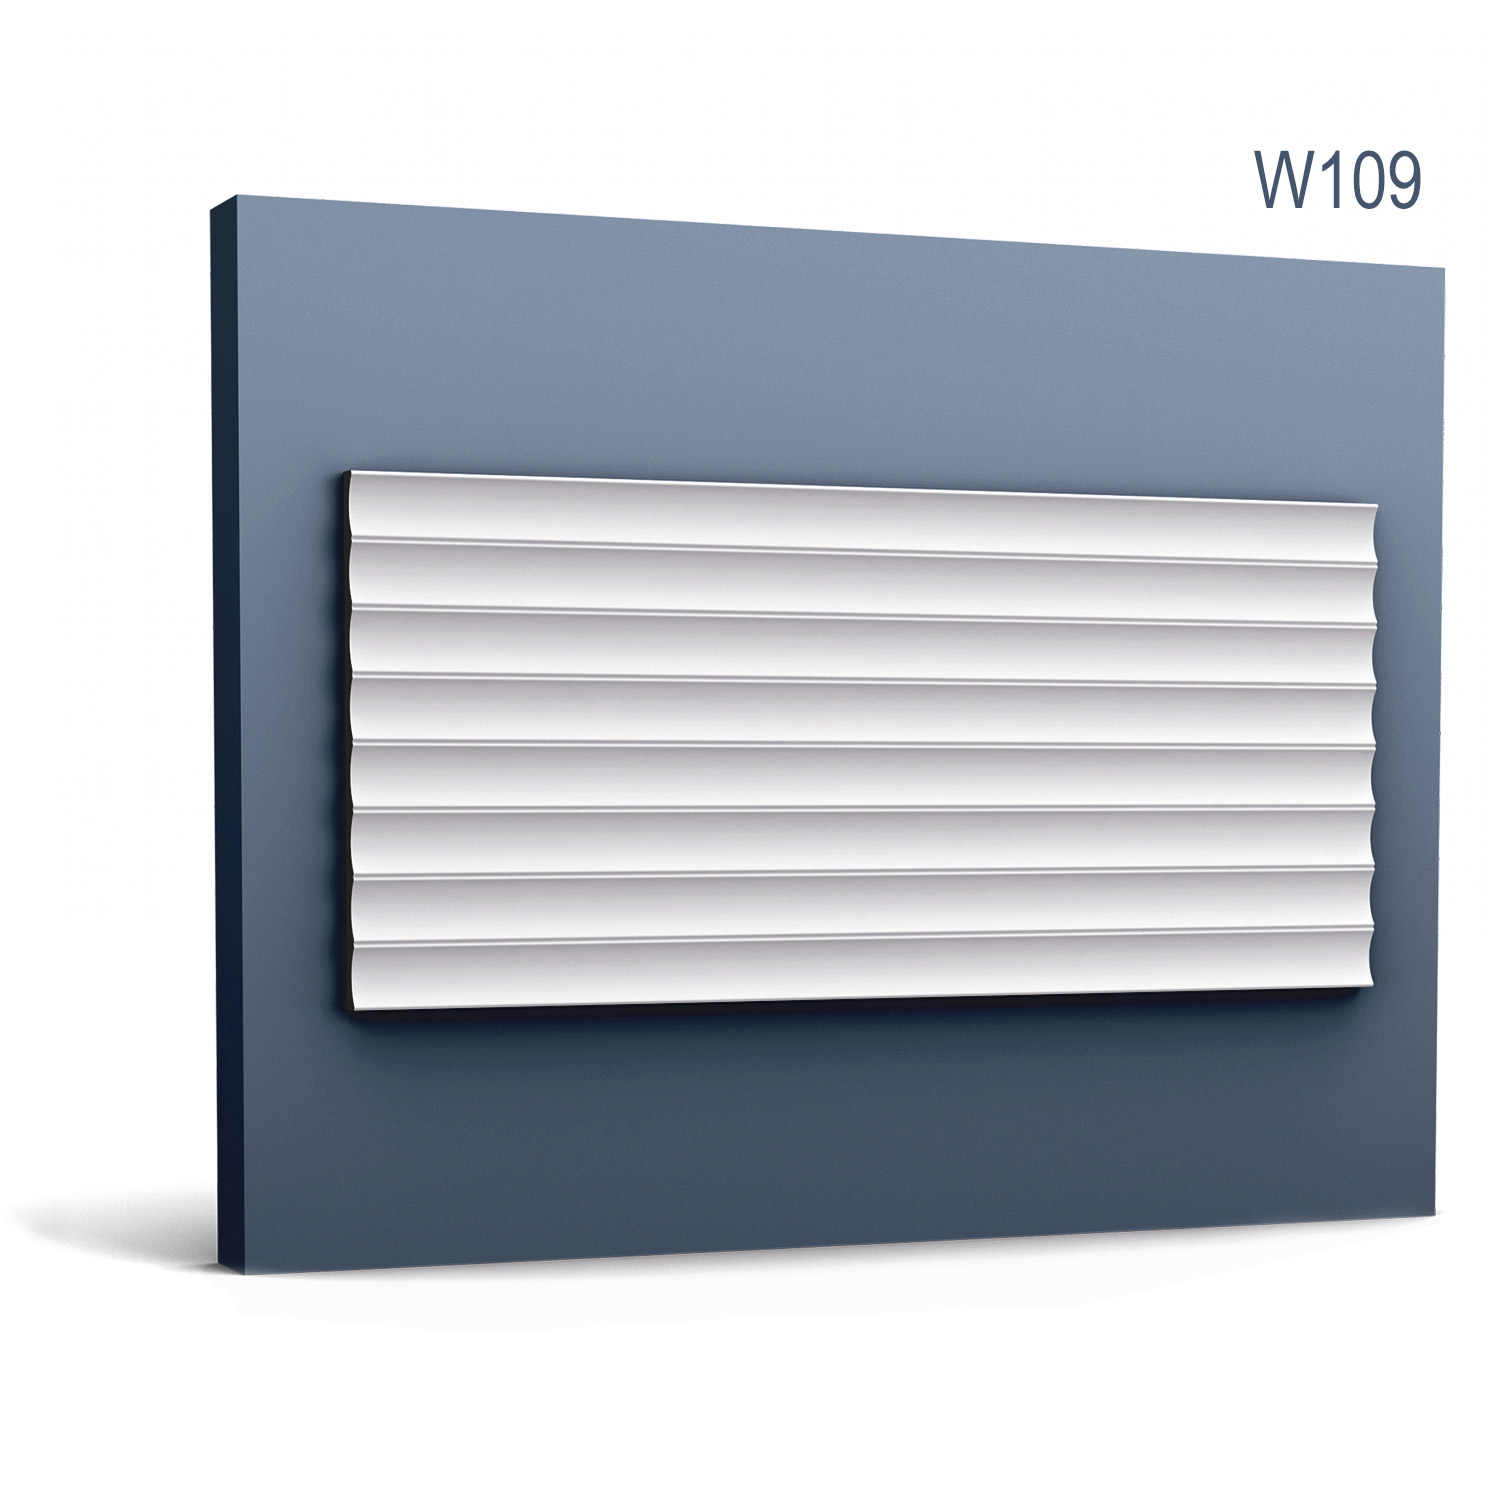 Panel Modern W109, Dimensiuni: 200 X 25 X 1.3 cm, Orac Decor